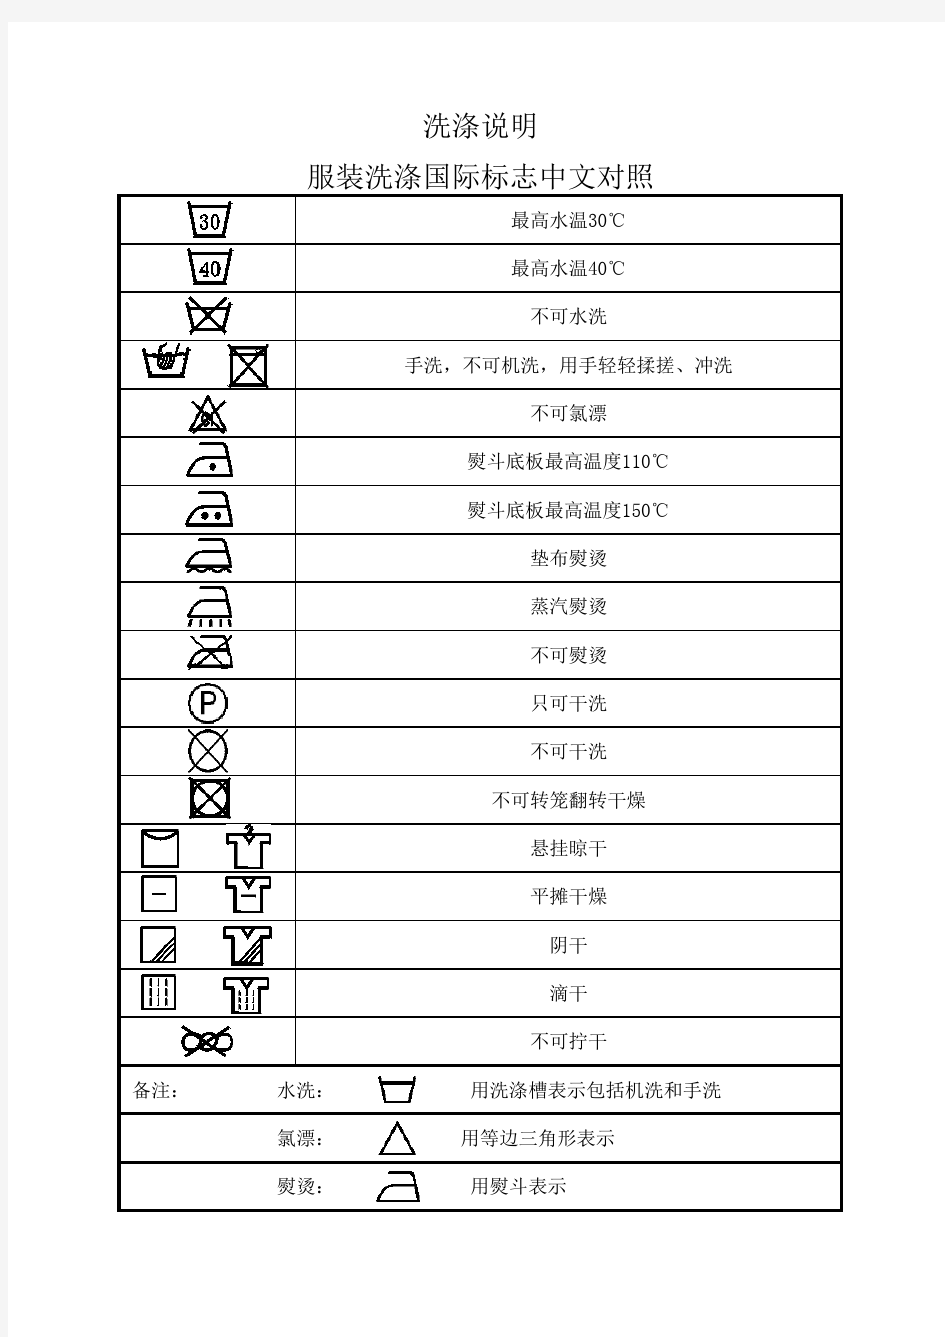 服装洗涤国际标志中文对照表(1)